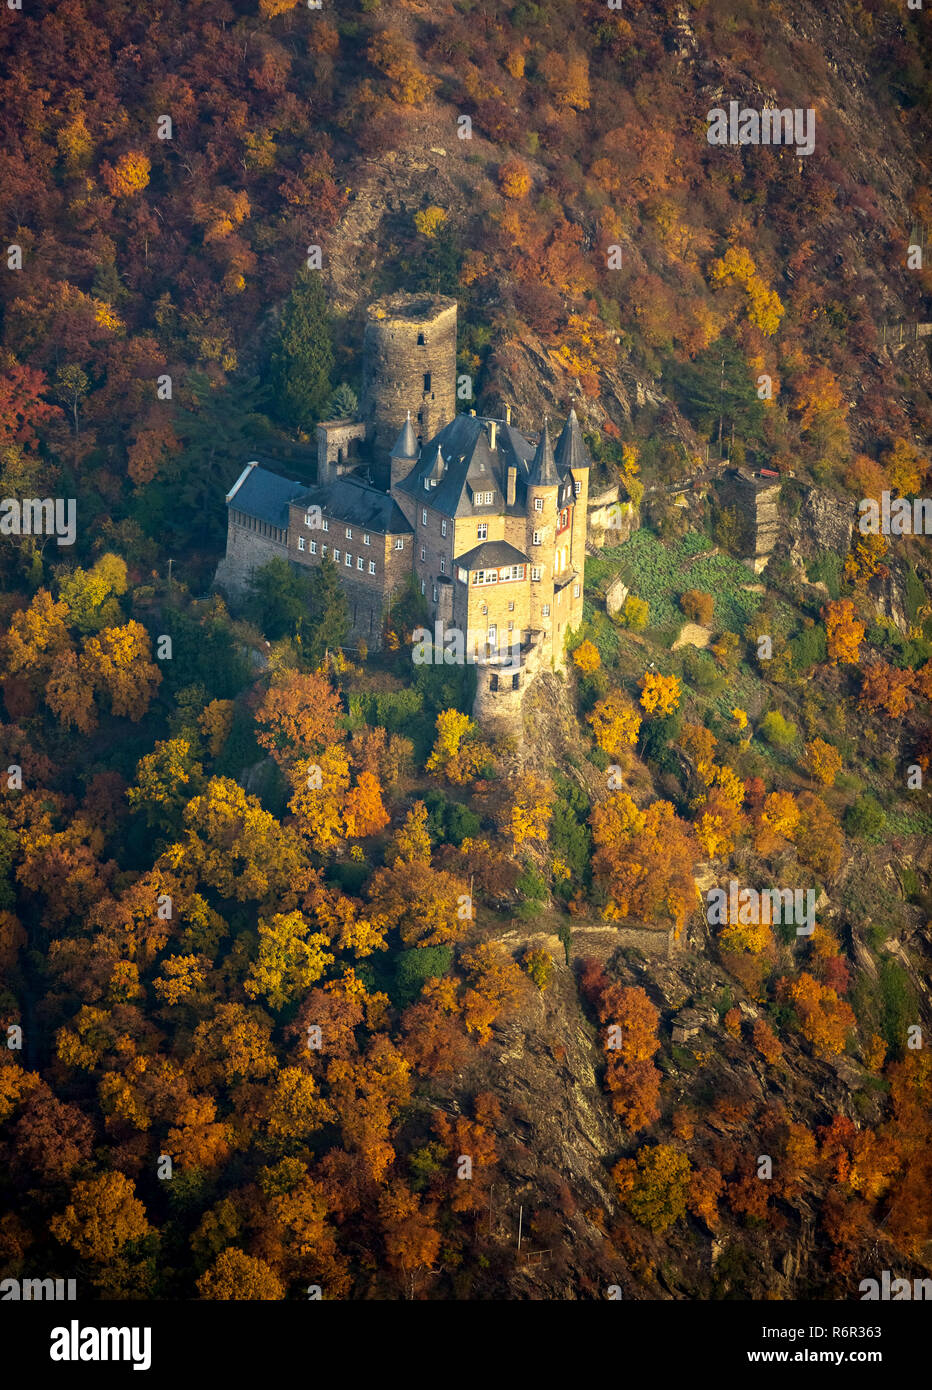 Burg Katz im Rheintal, Rhein bei St.Goarshausen, Sankt Goar, Rheintal, Renania-Palatinado, Deutschland Foto de stock